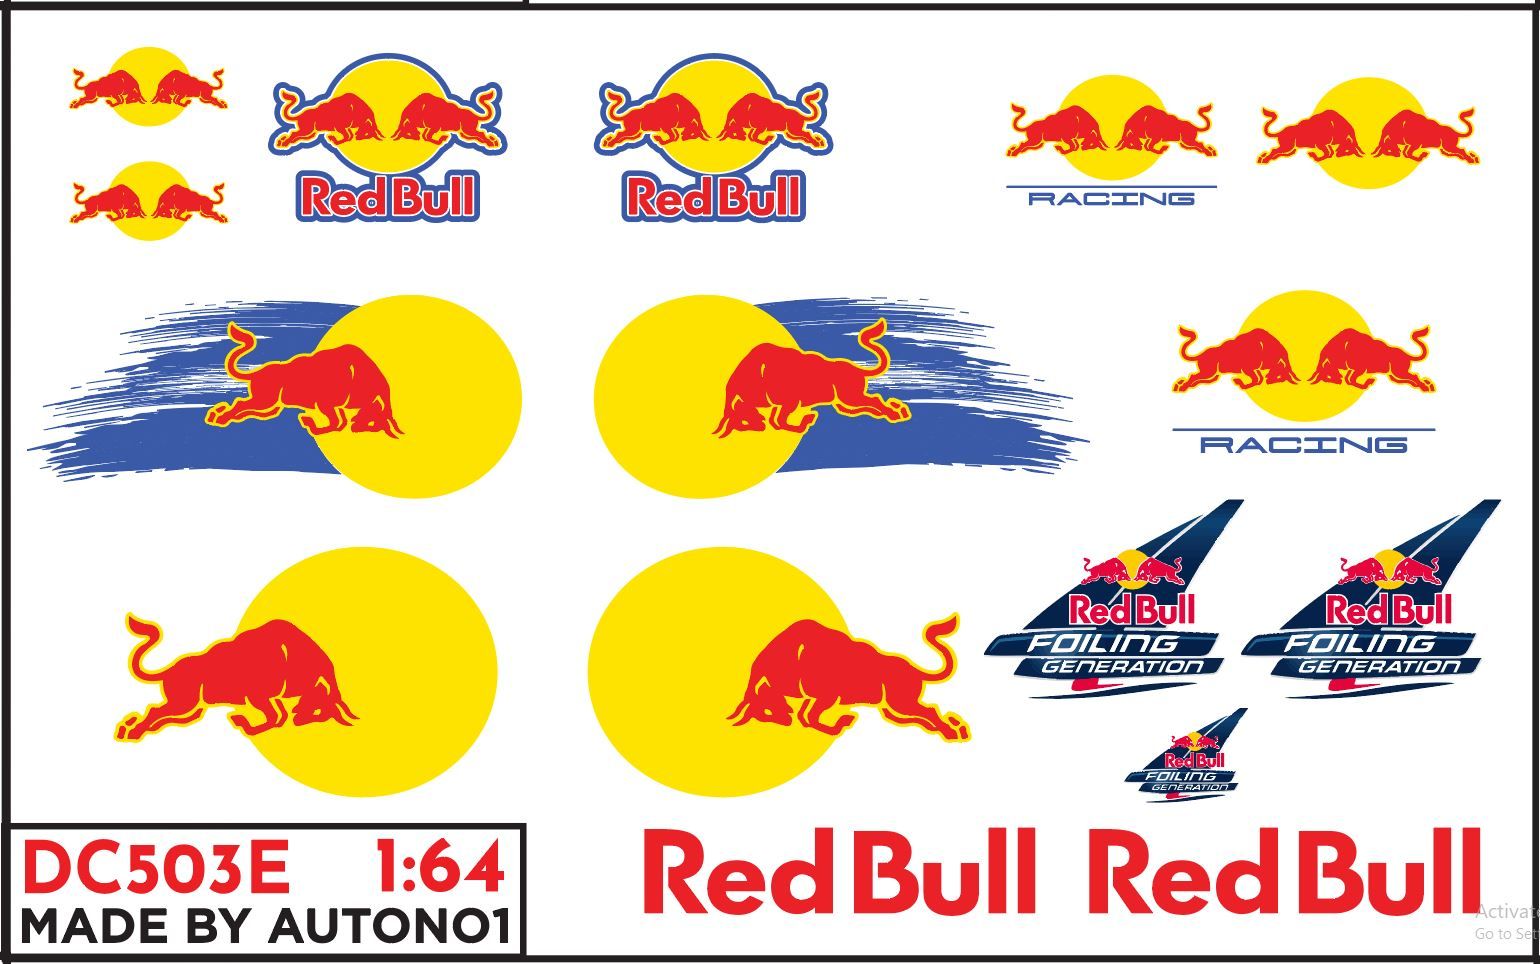  Decal nước decal nước Red Bull Racing 1:64 Autono1 DC503E 